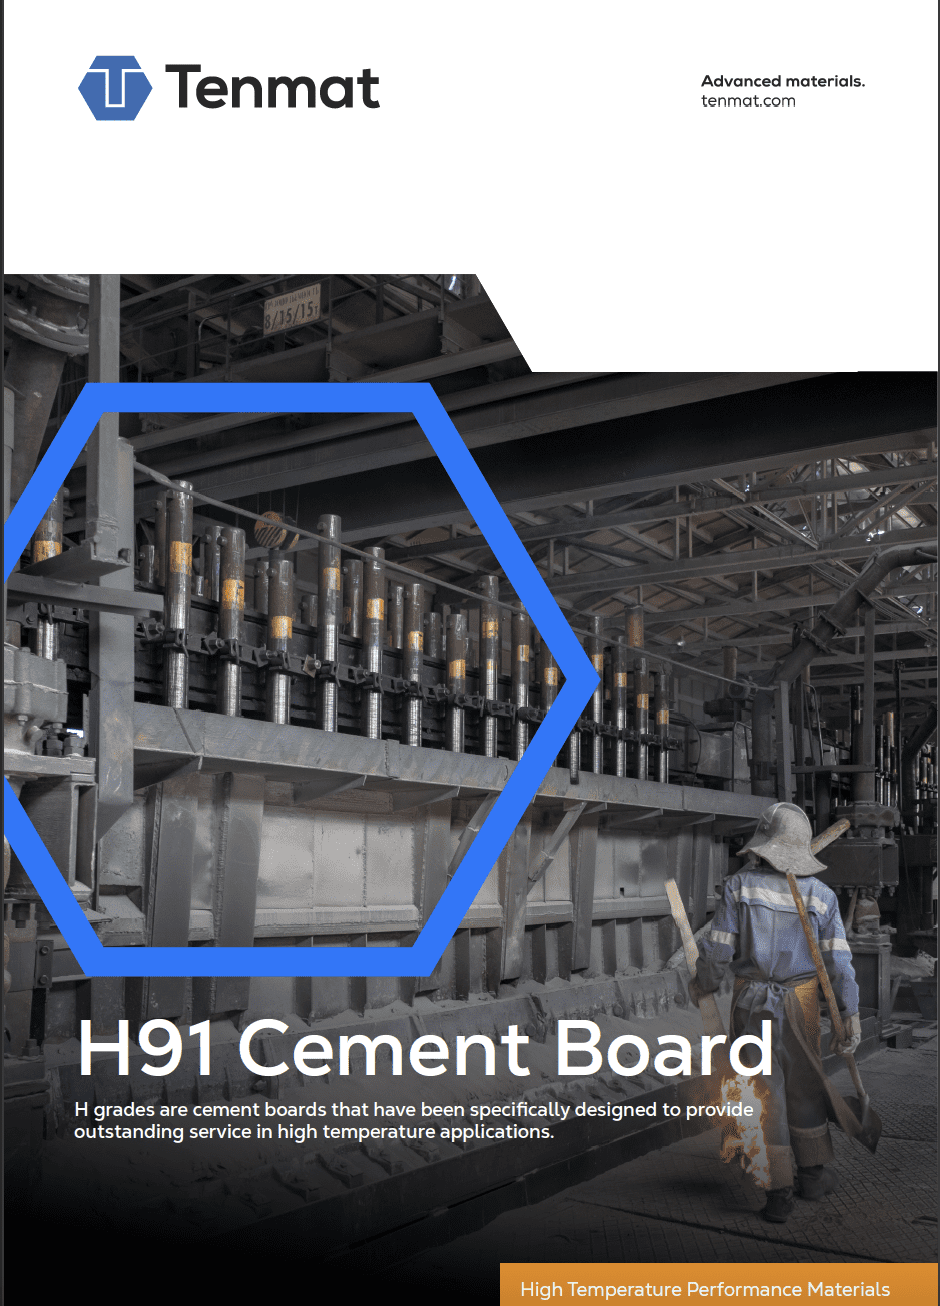 H91 cement board